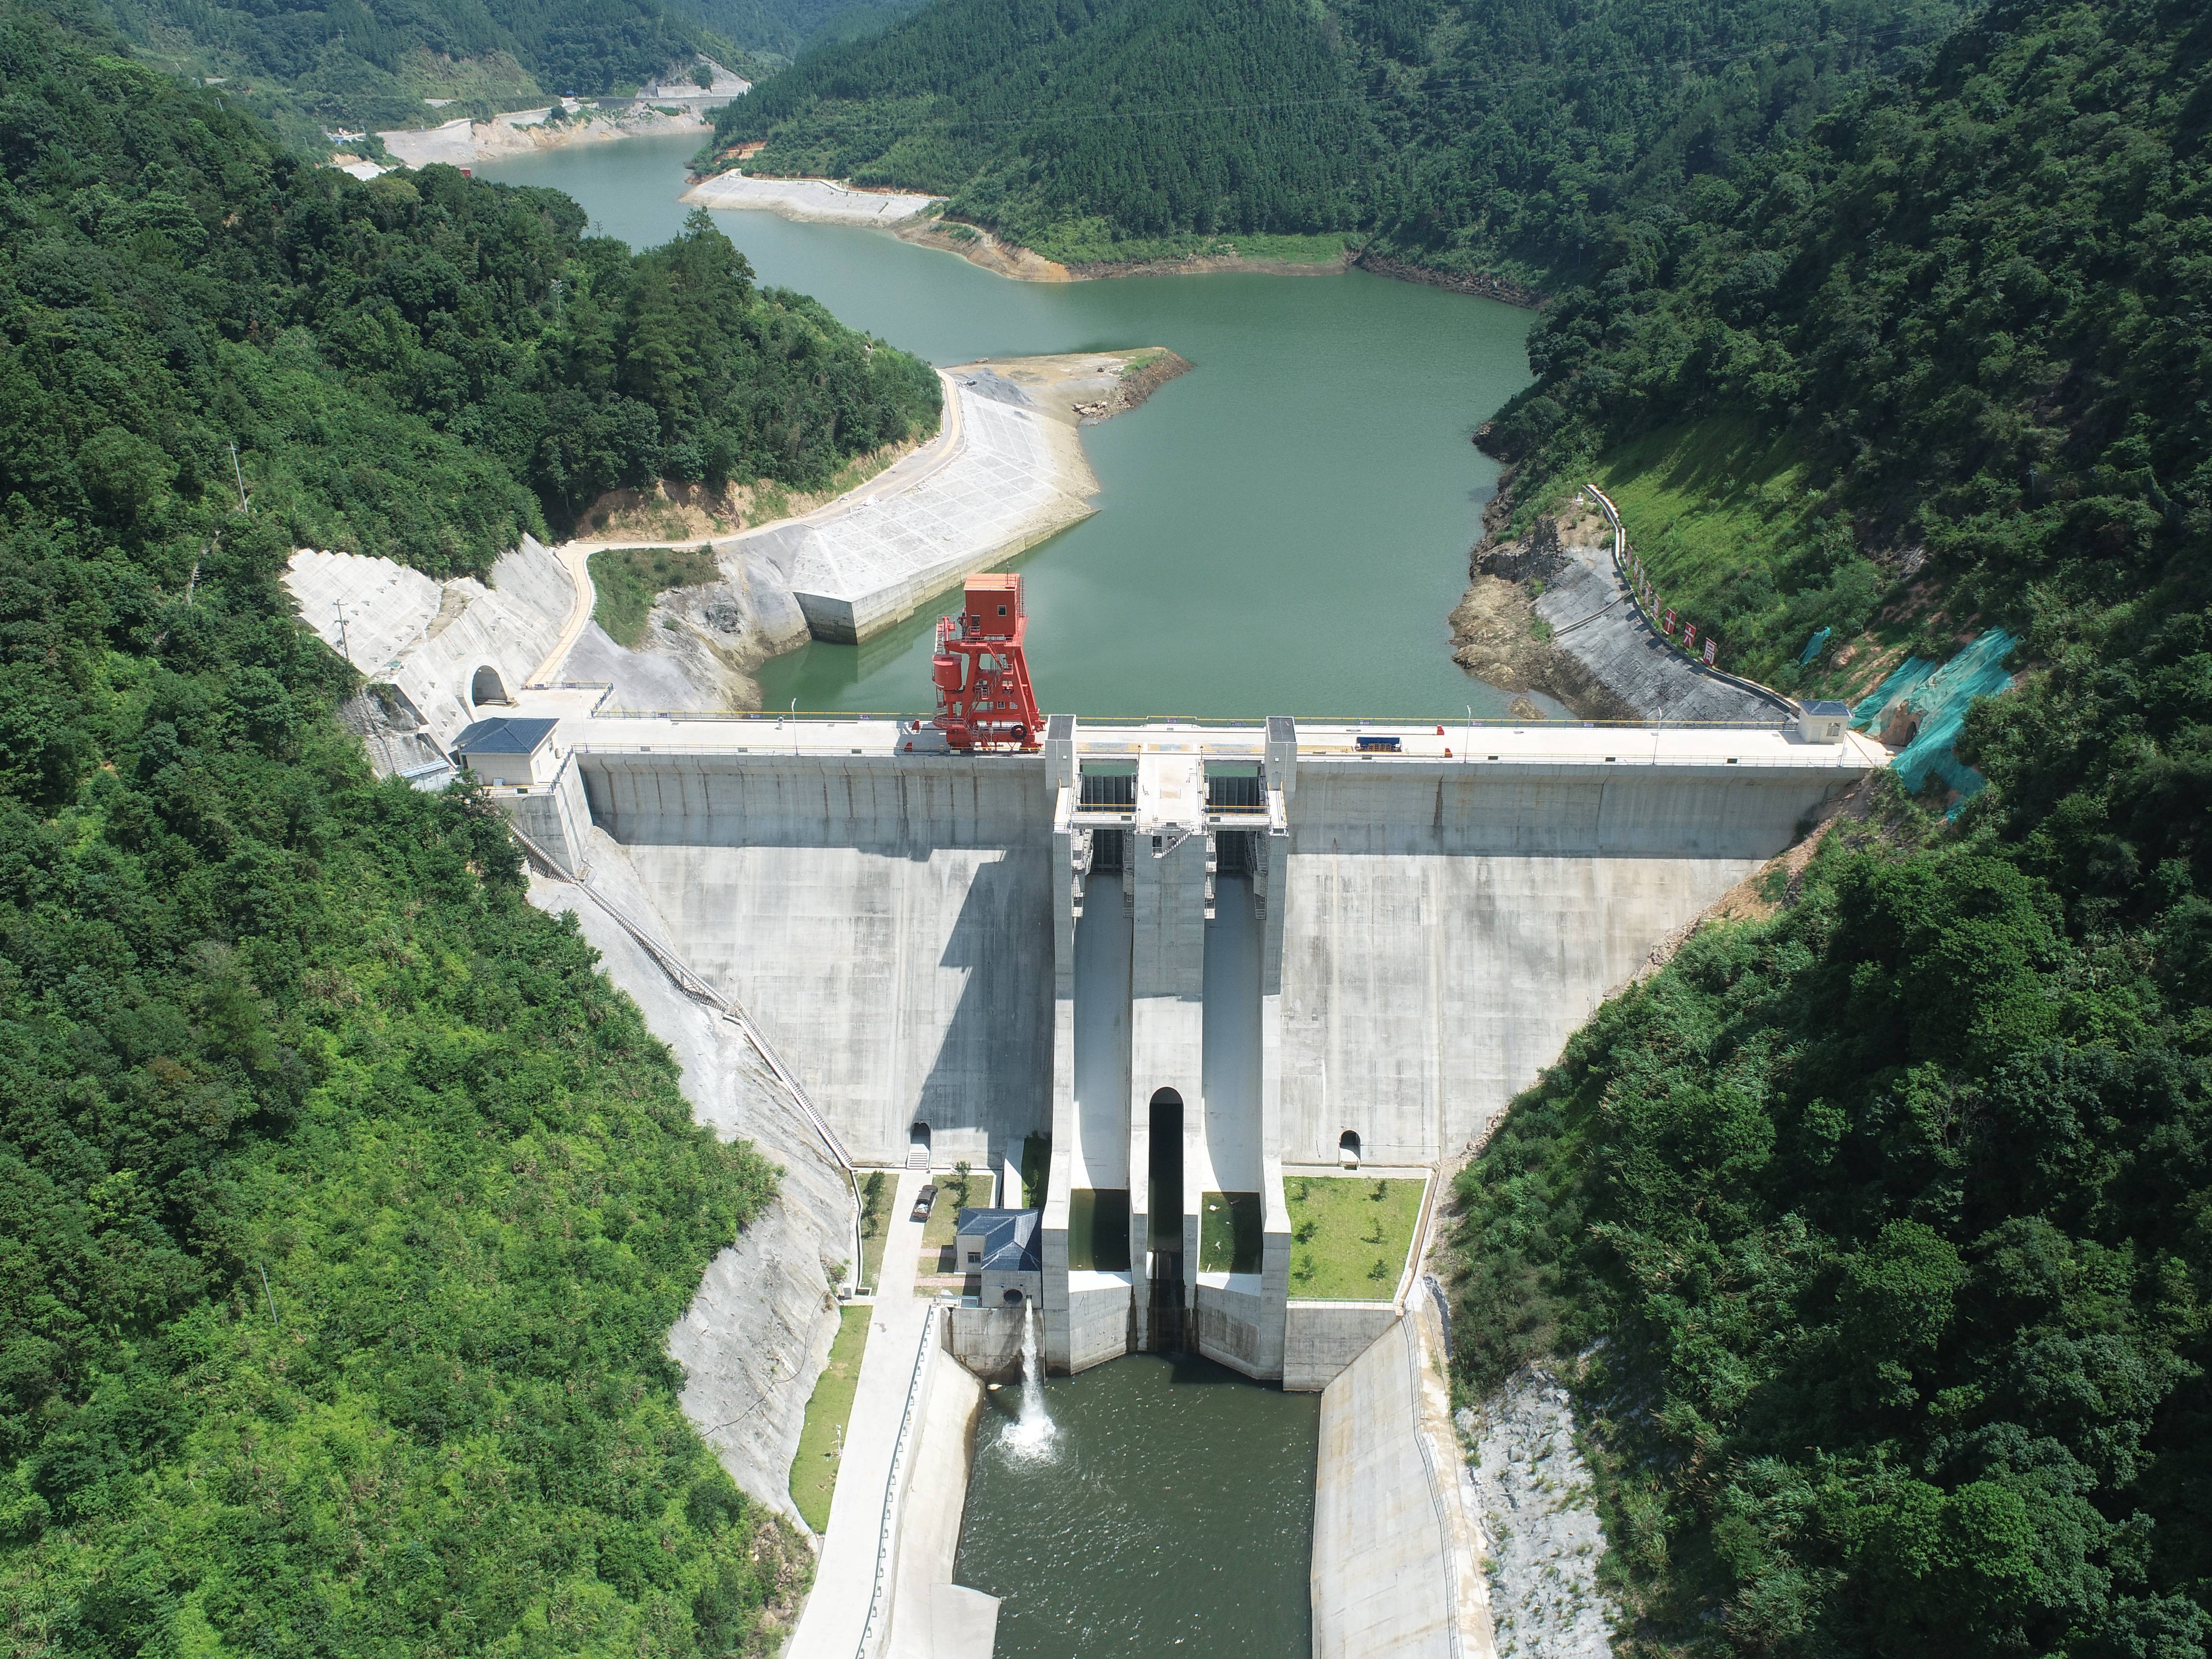 福建永泰抽水蓄能电站位于福州市永泰县白云乡,是福建省级重点项目